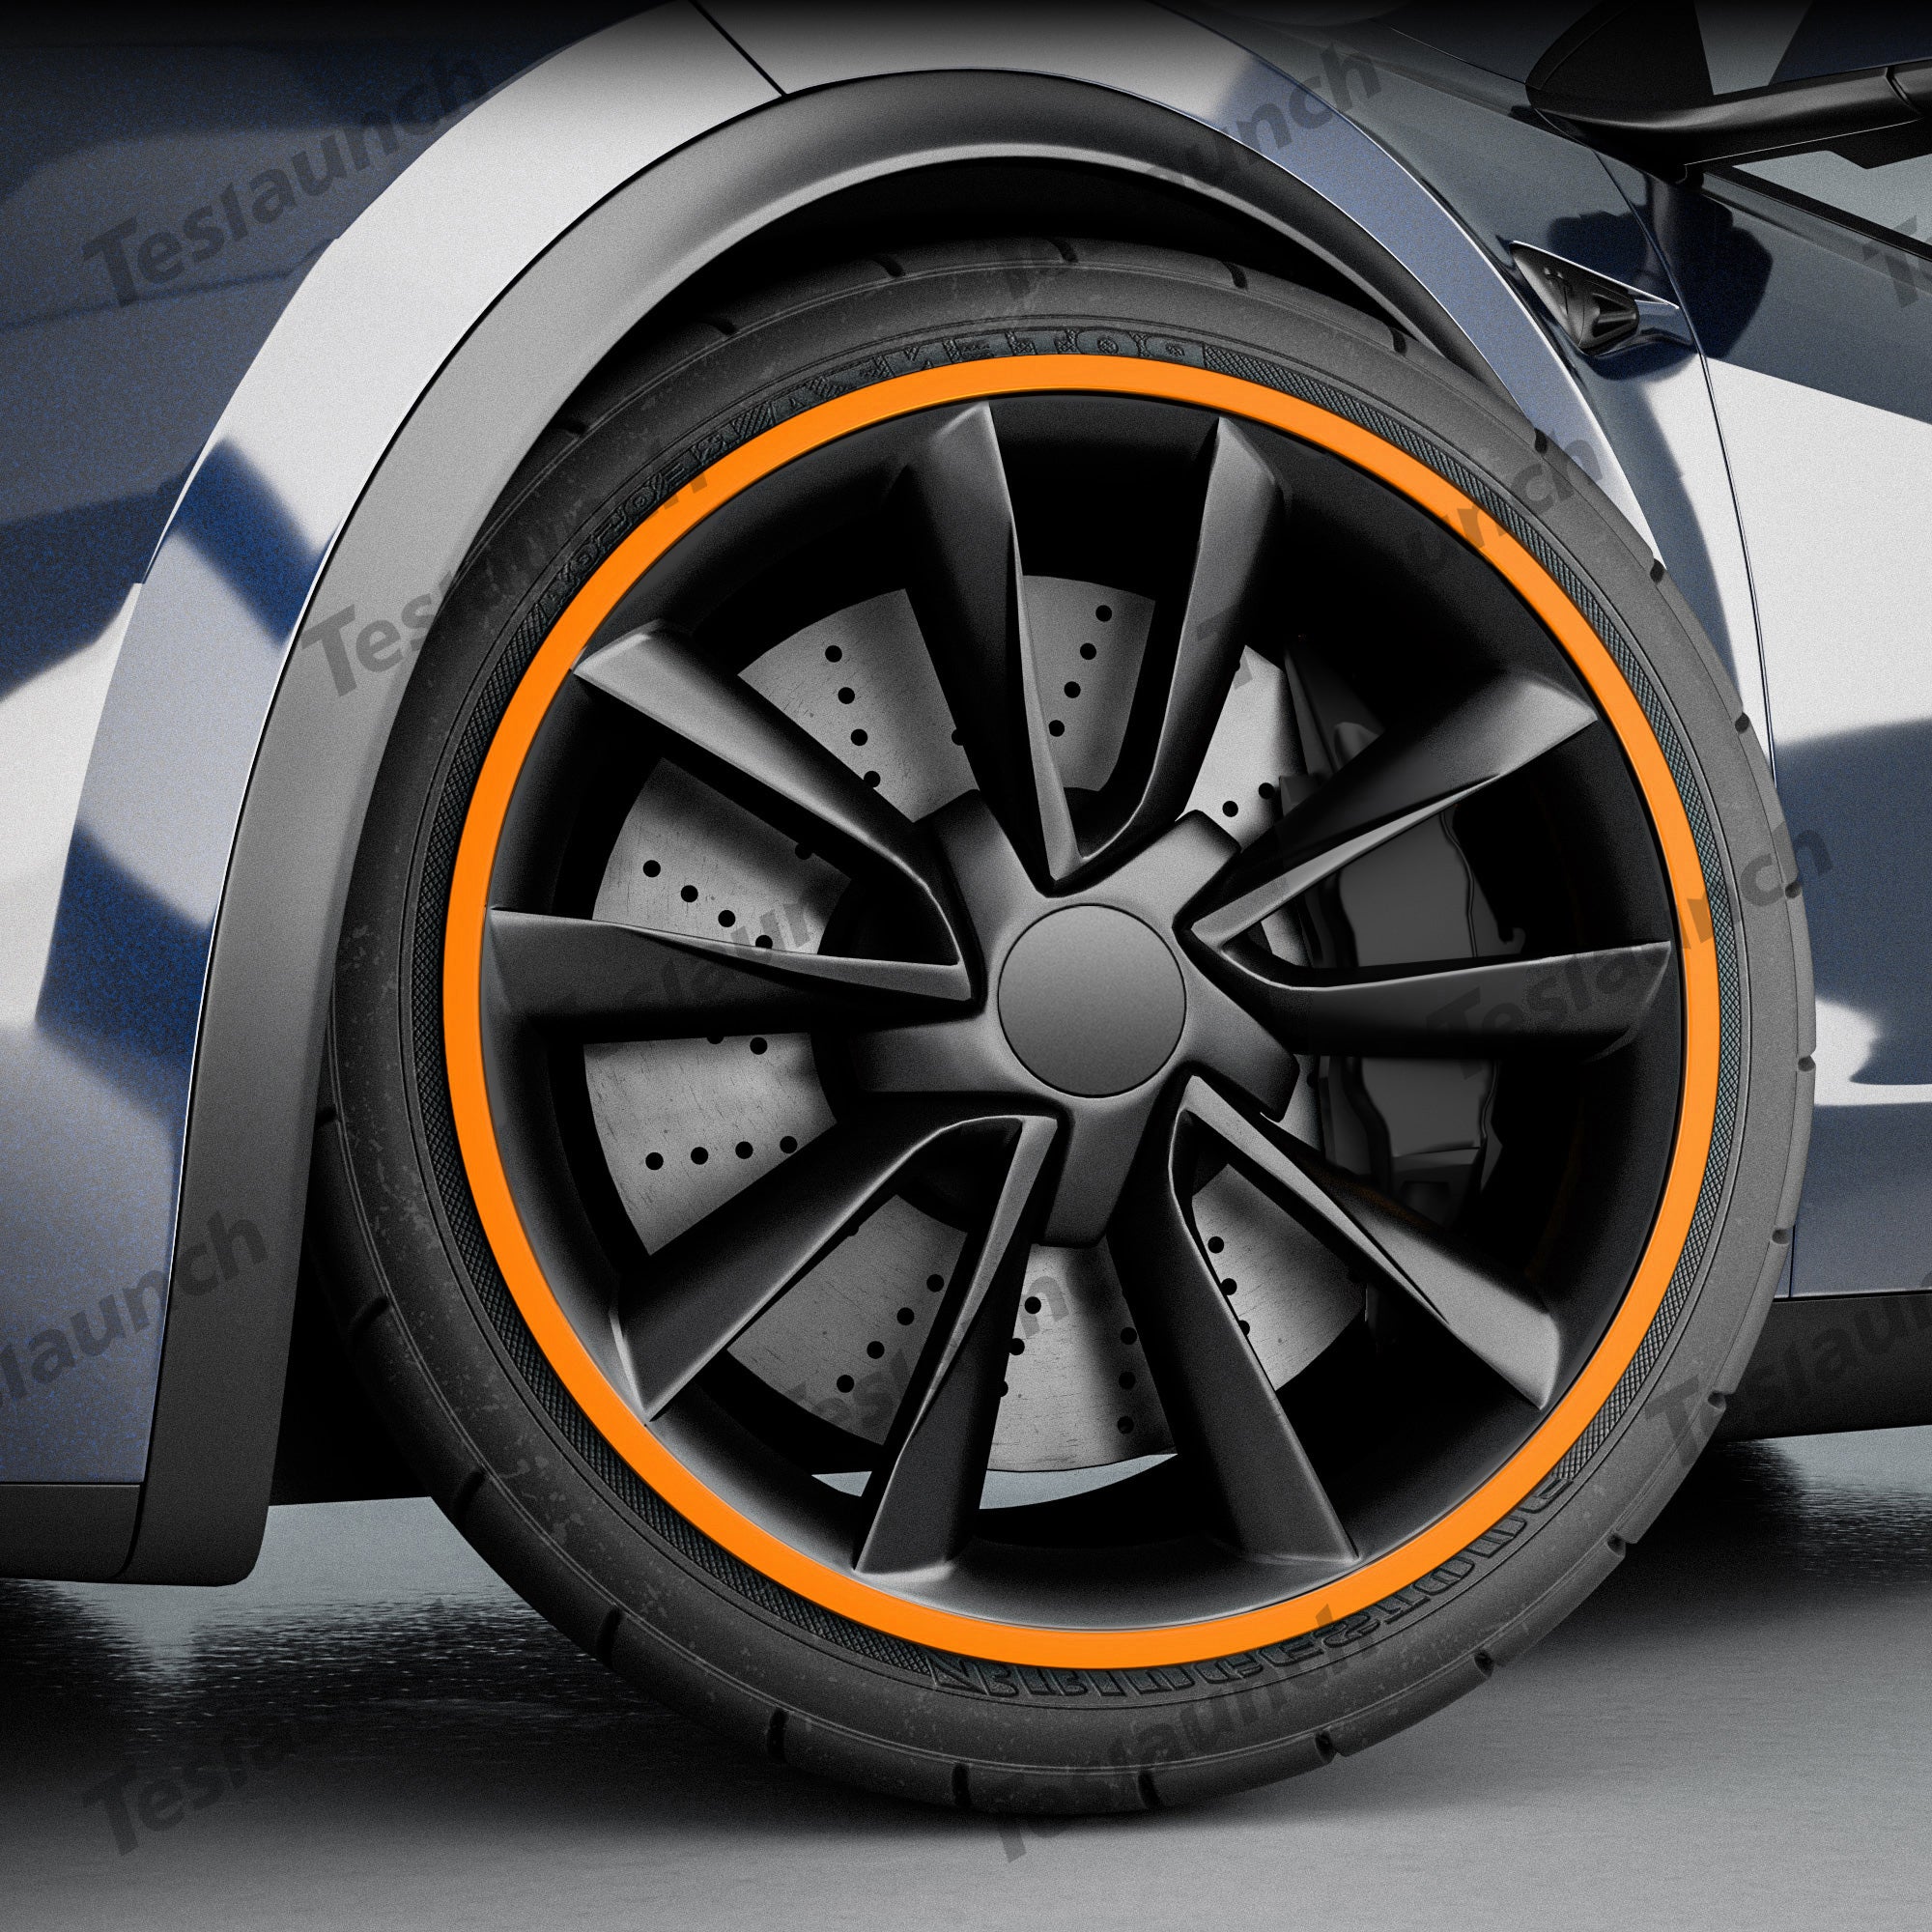 Gold Aluminum Alloy Wheel Rim Protector- Fits All Cars (4pcs）